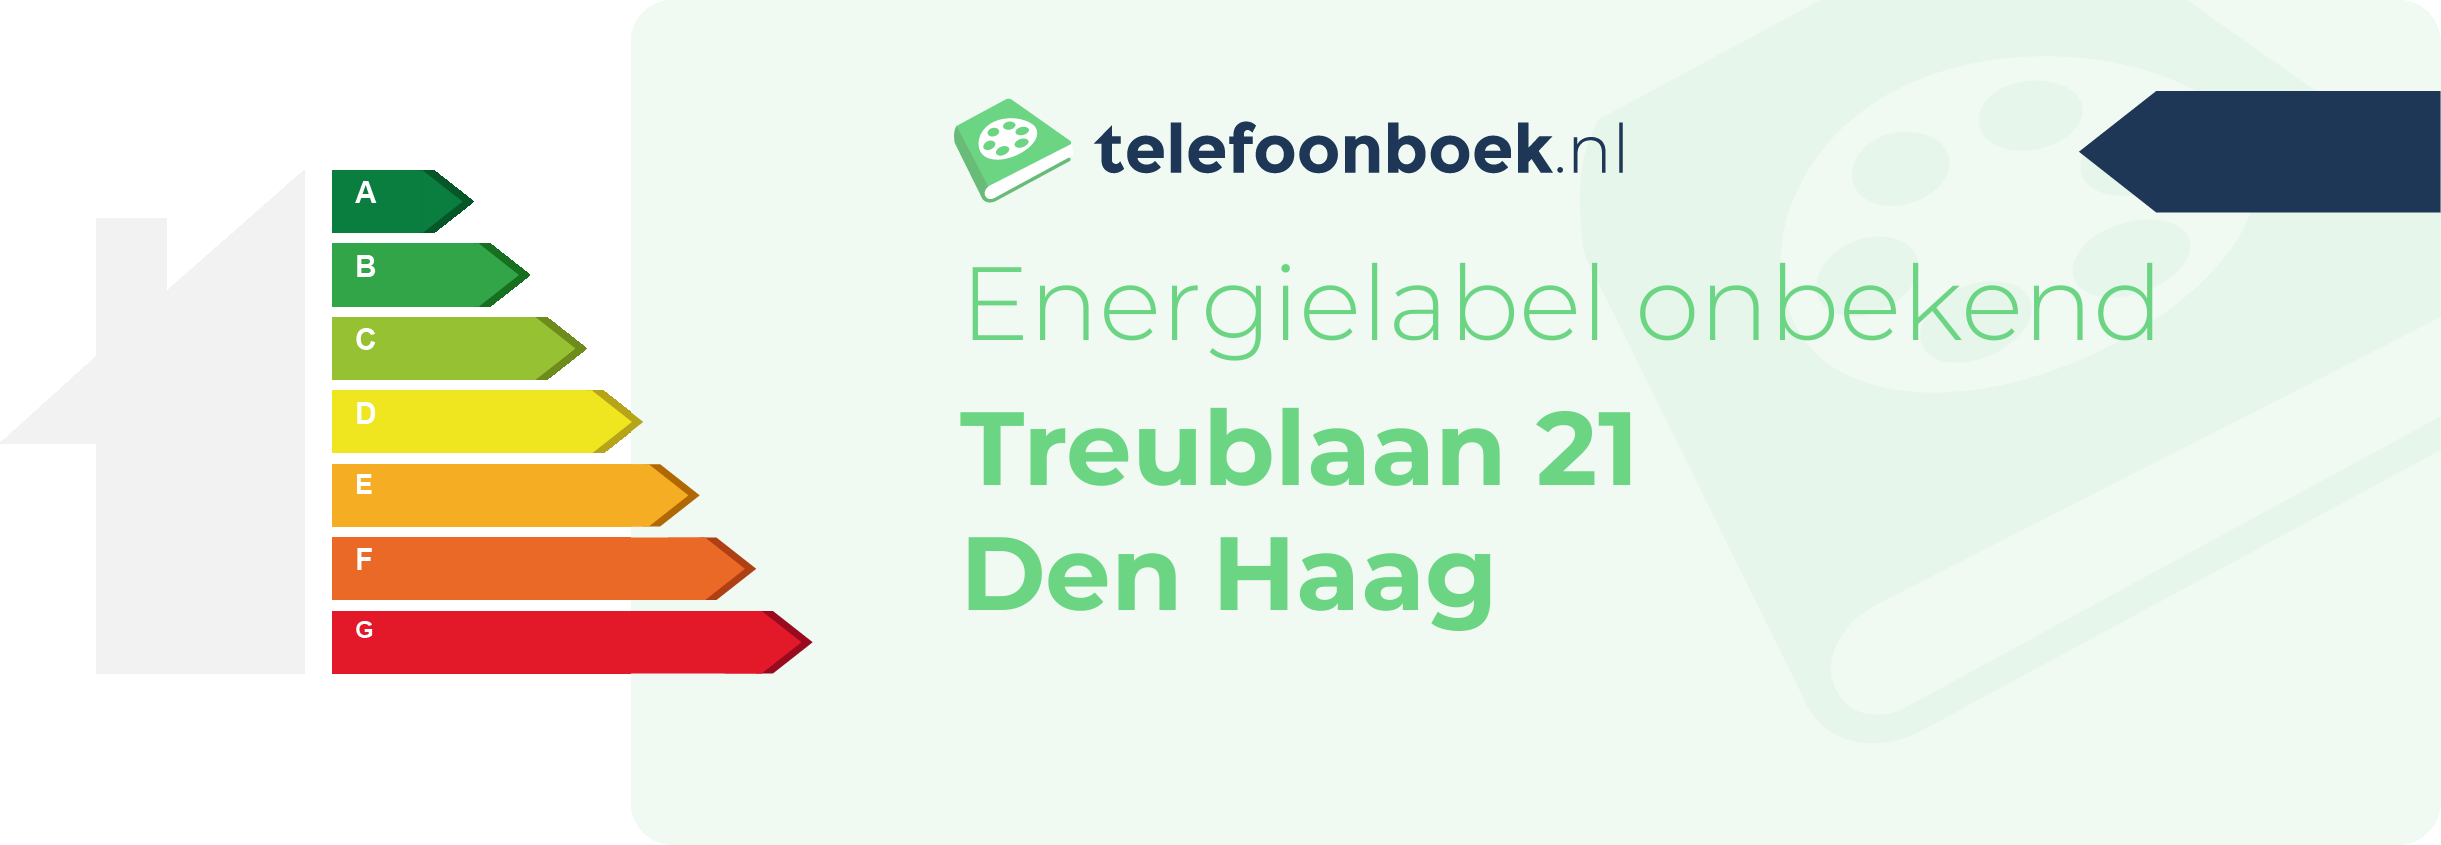 Energielabel Treublaan 21 Den Haag